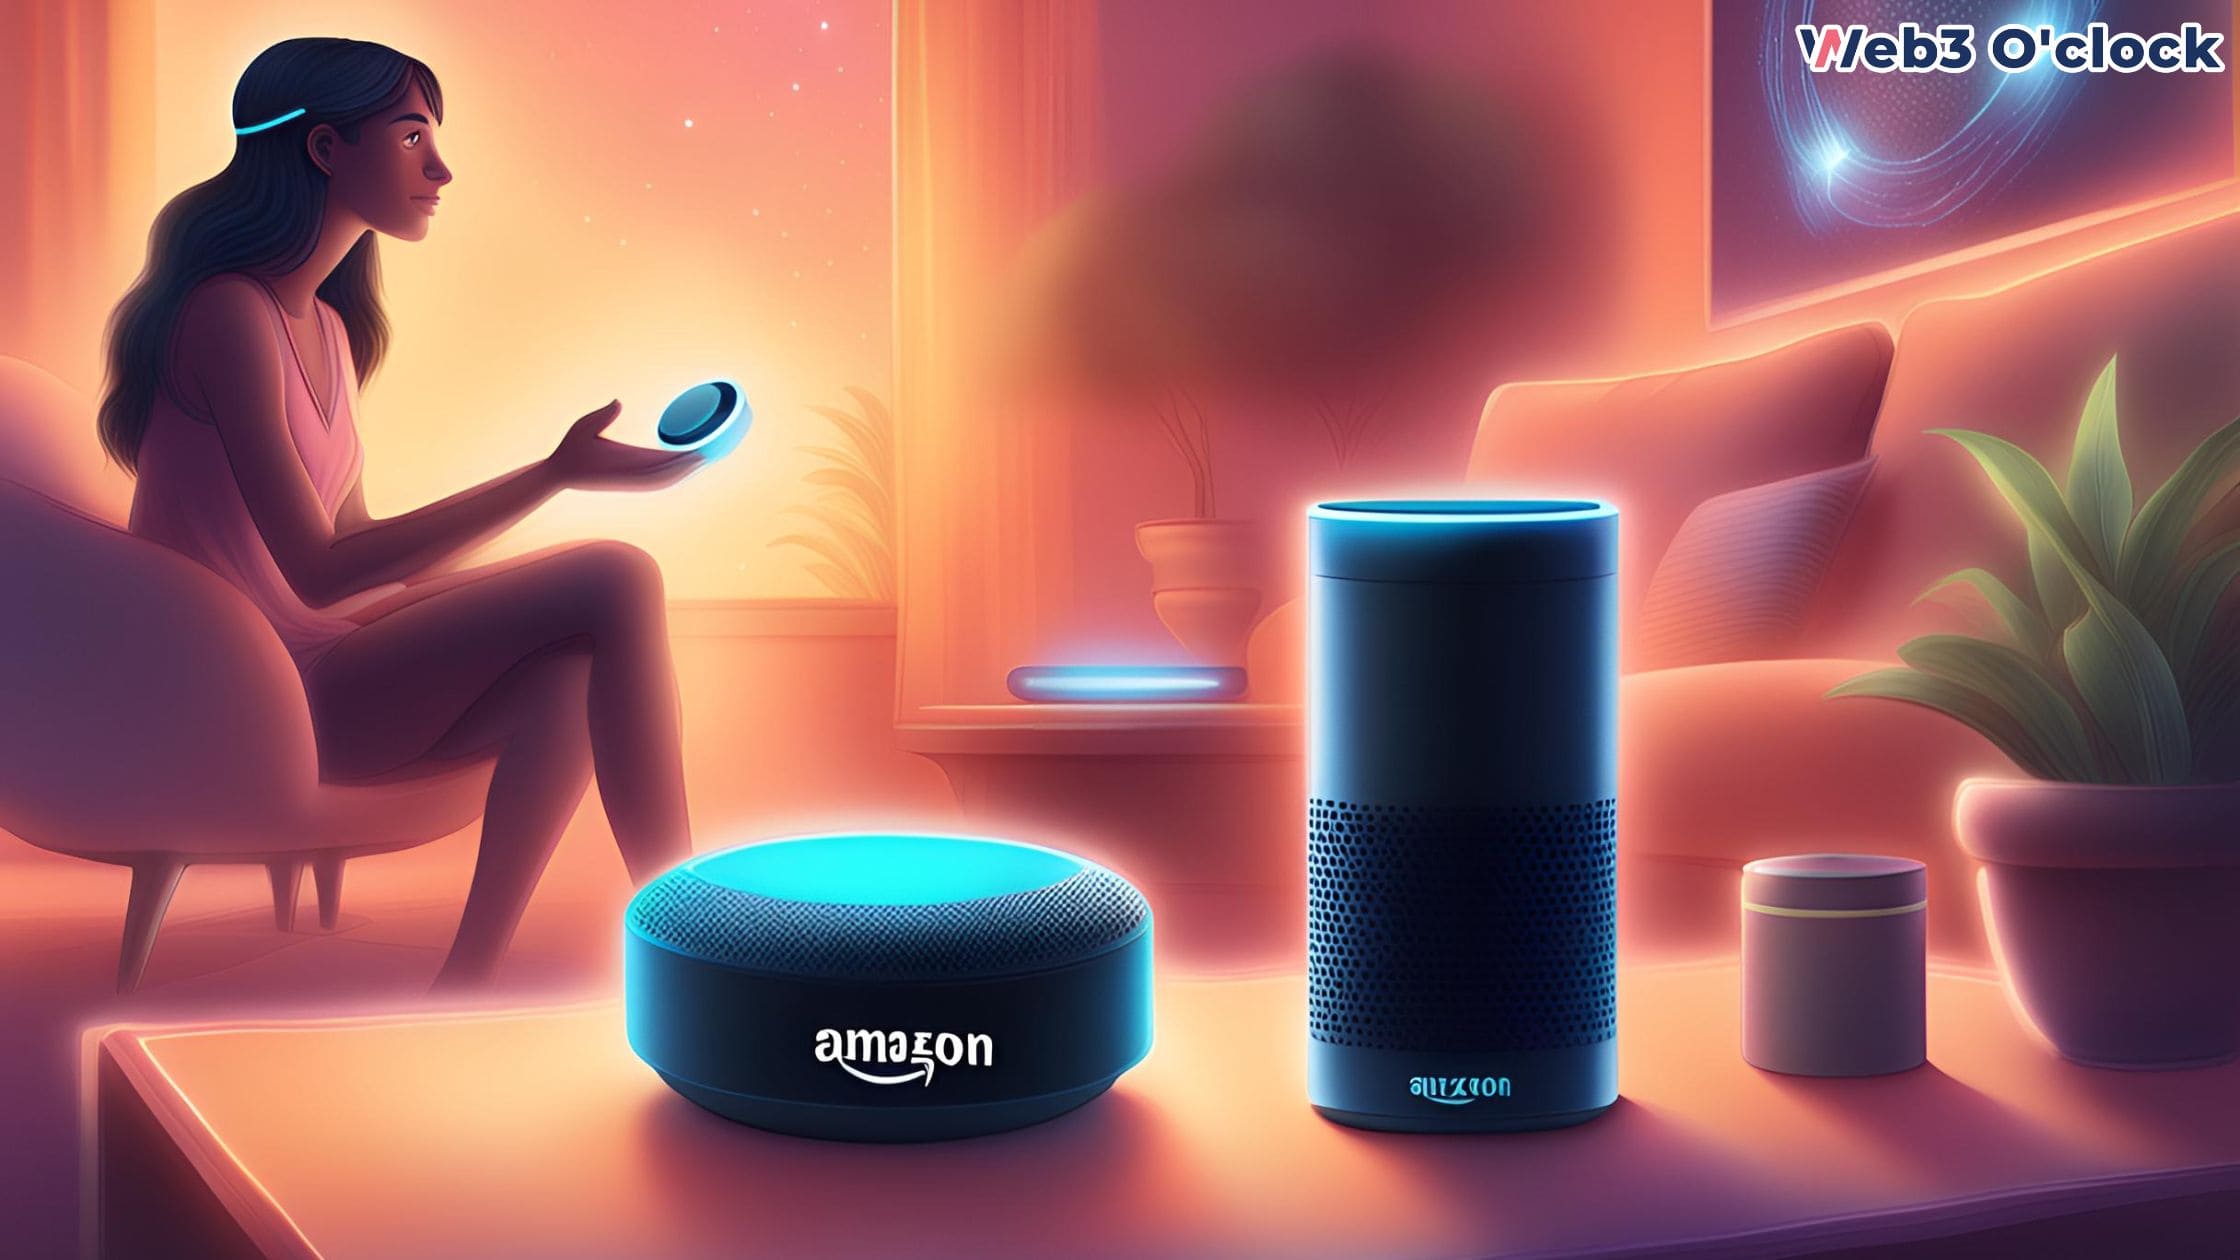 Amazon's AI-Powered Alexa by web3 o'clock